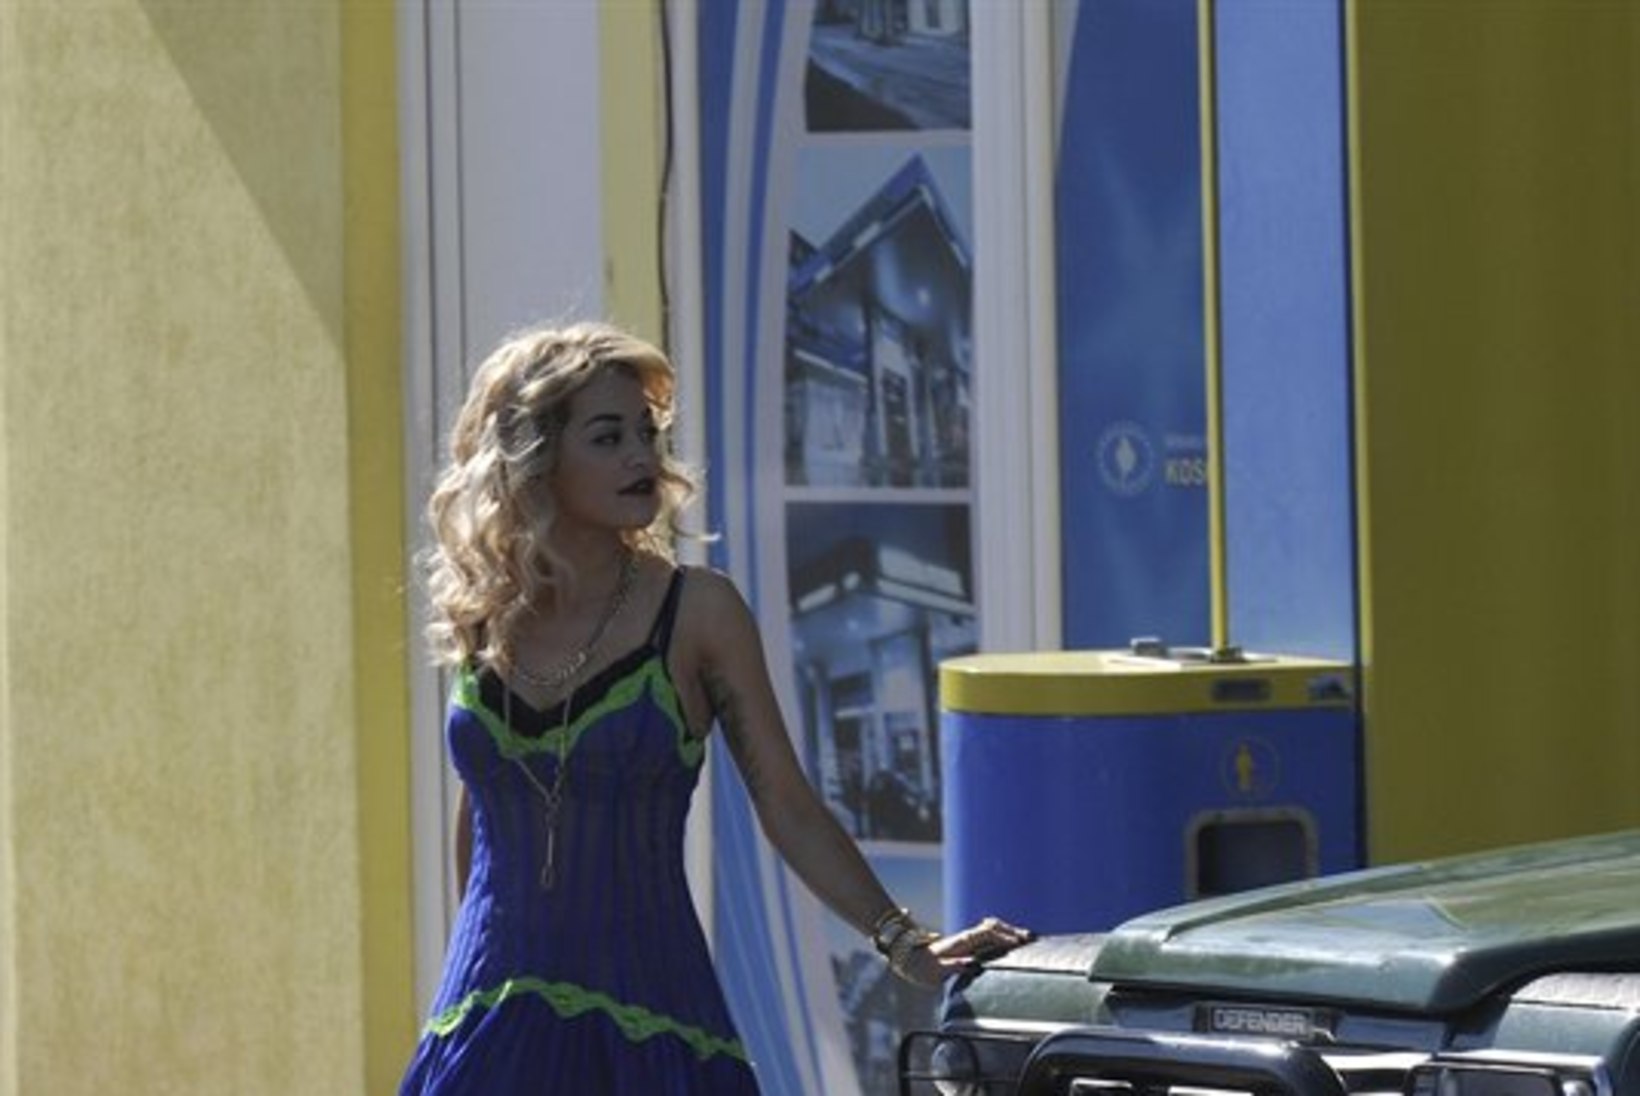 FOTOD JA VIDEO: Rita Ora filmib uut muuvit kodumaal Kosovos